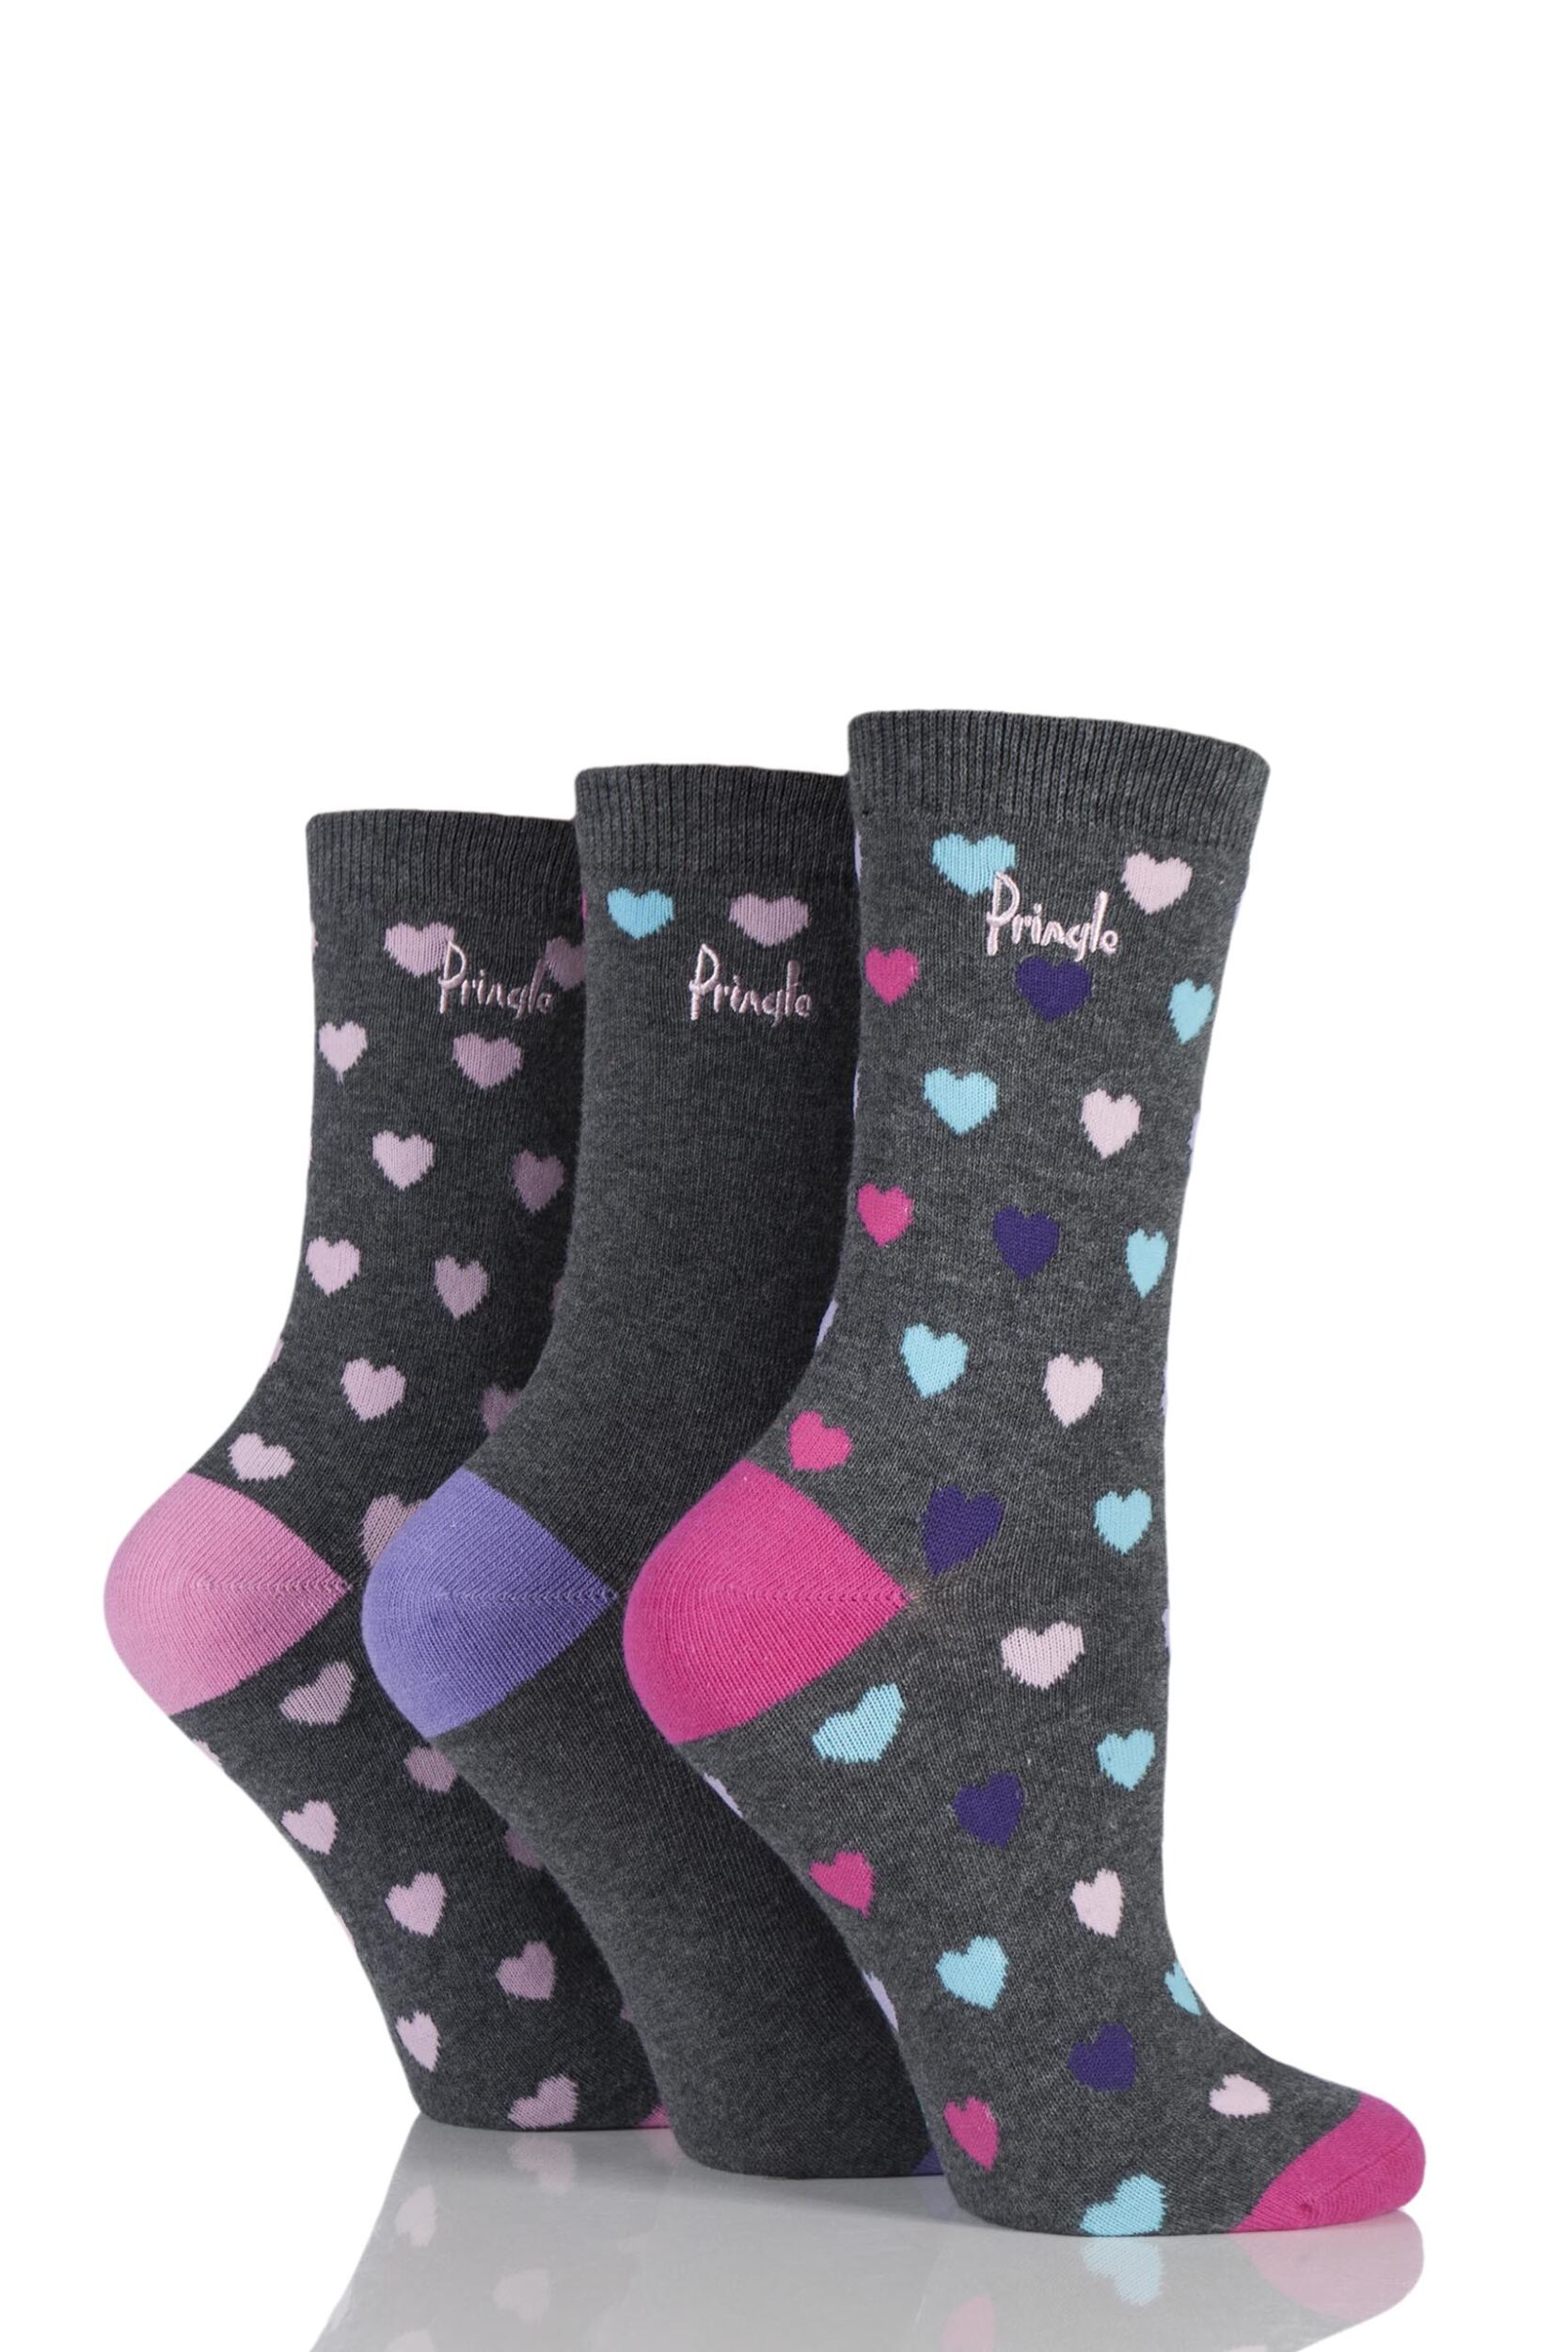 Ladies 3 Pair Pringle Rosie Heart Patterned Cotton Socks | eBay